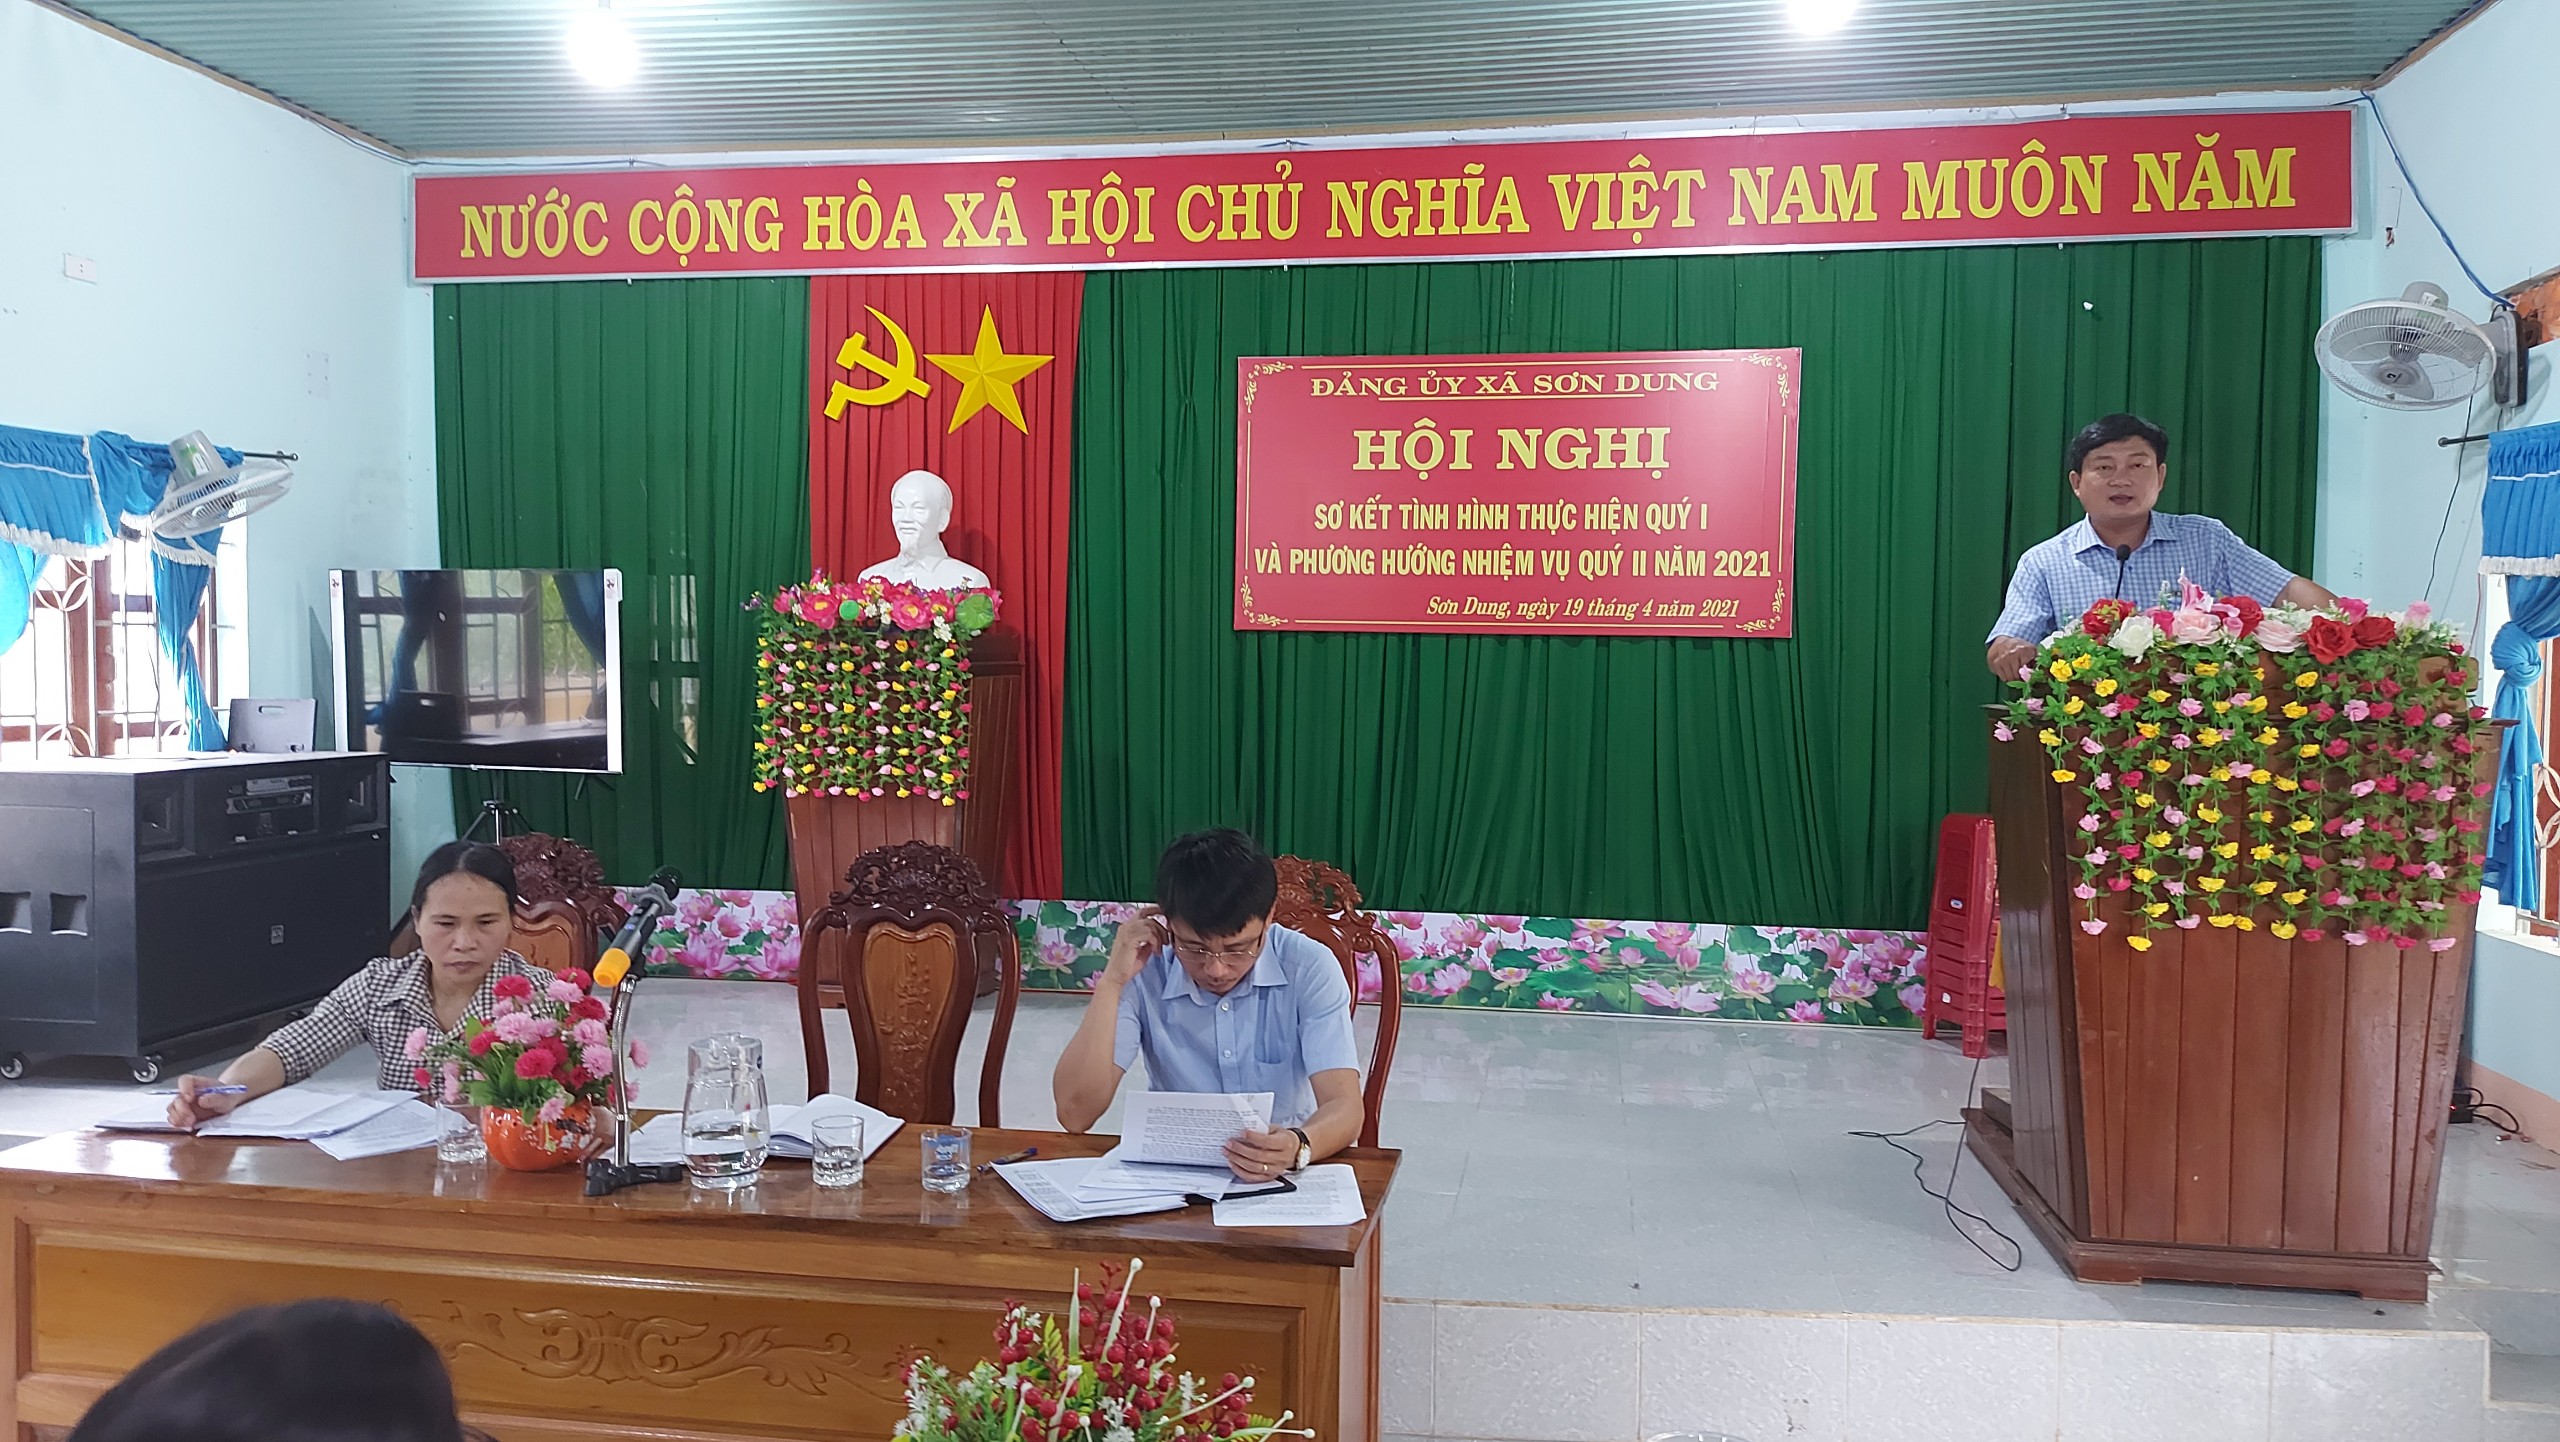 Ngày 19/4/2021, Đảng ủy xã Sơn Dung tổ chức Hội nghị sơ kết tình hình thực hiện quý I/2021